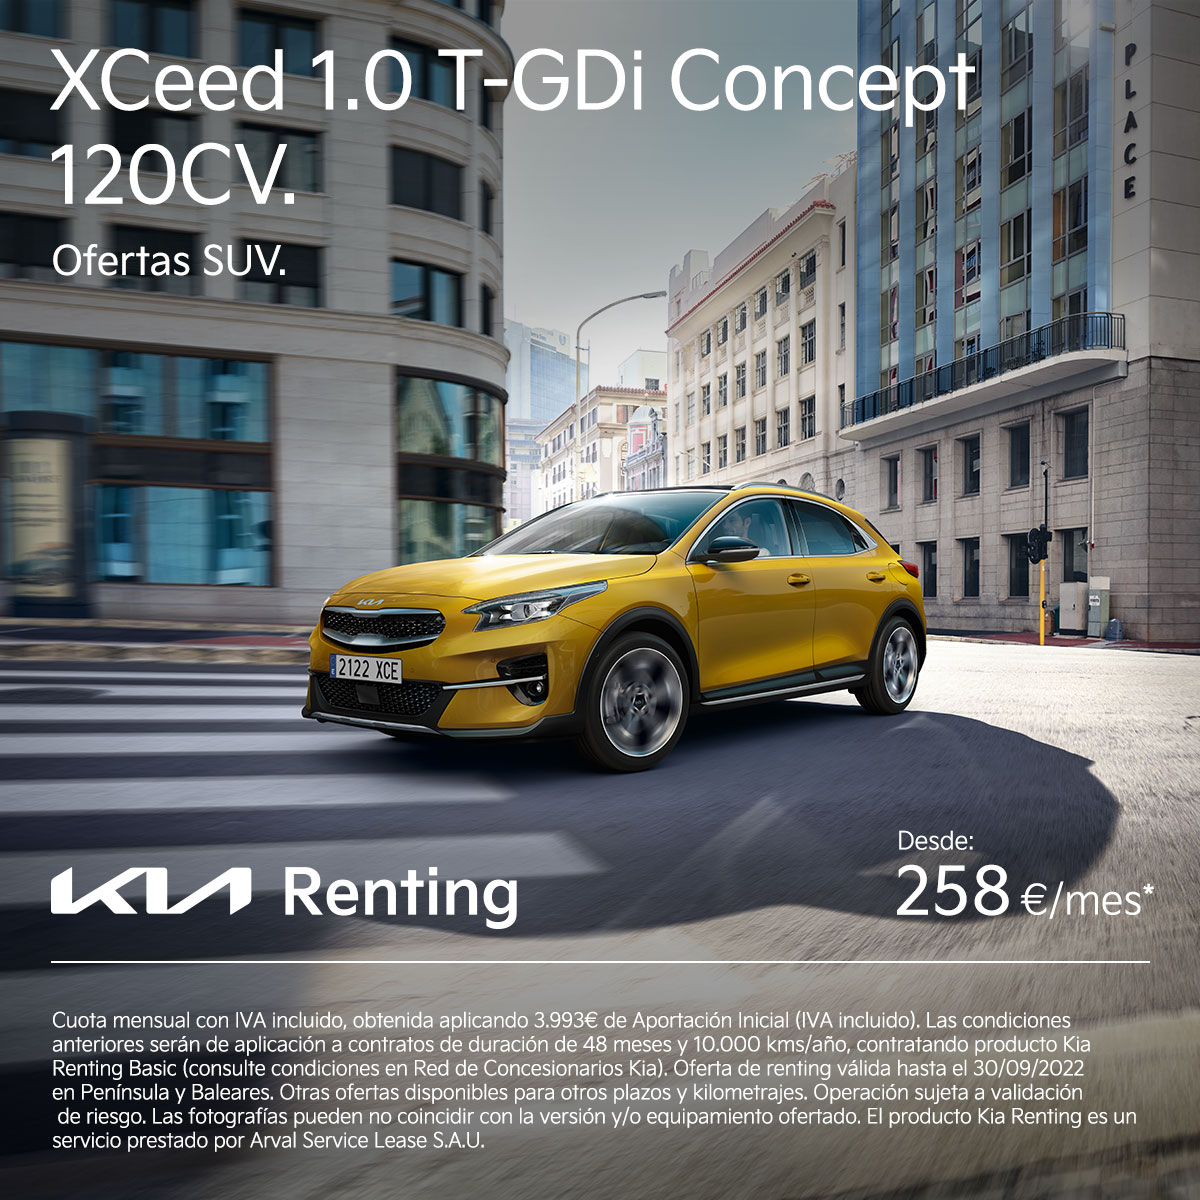 4-Kia_Renting_1200x1200_Xceed_SUV.jpeg